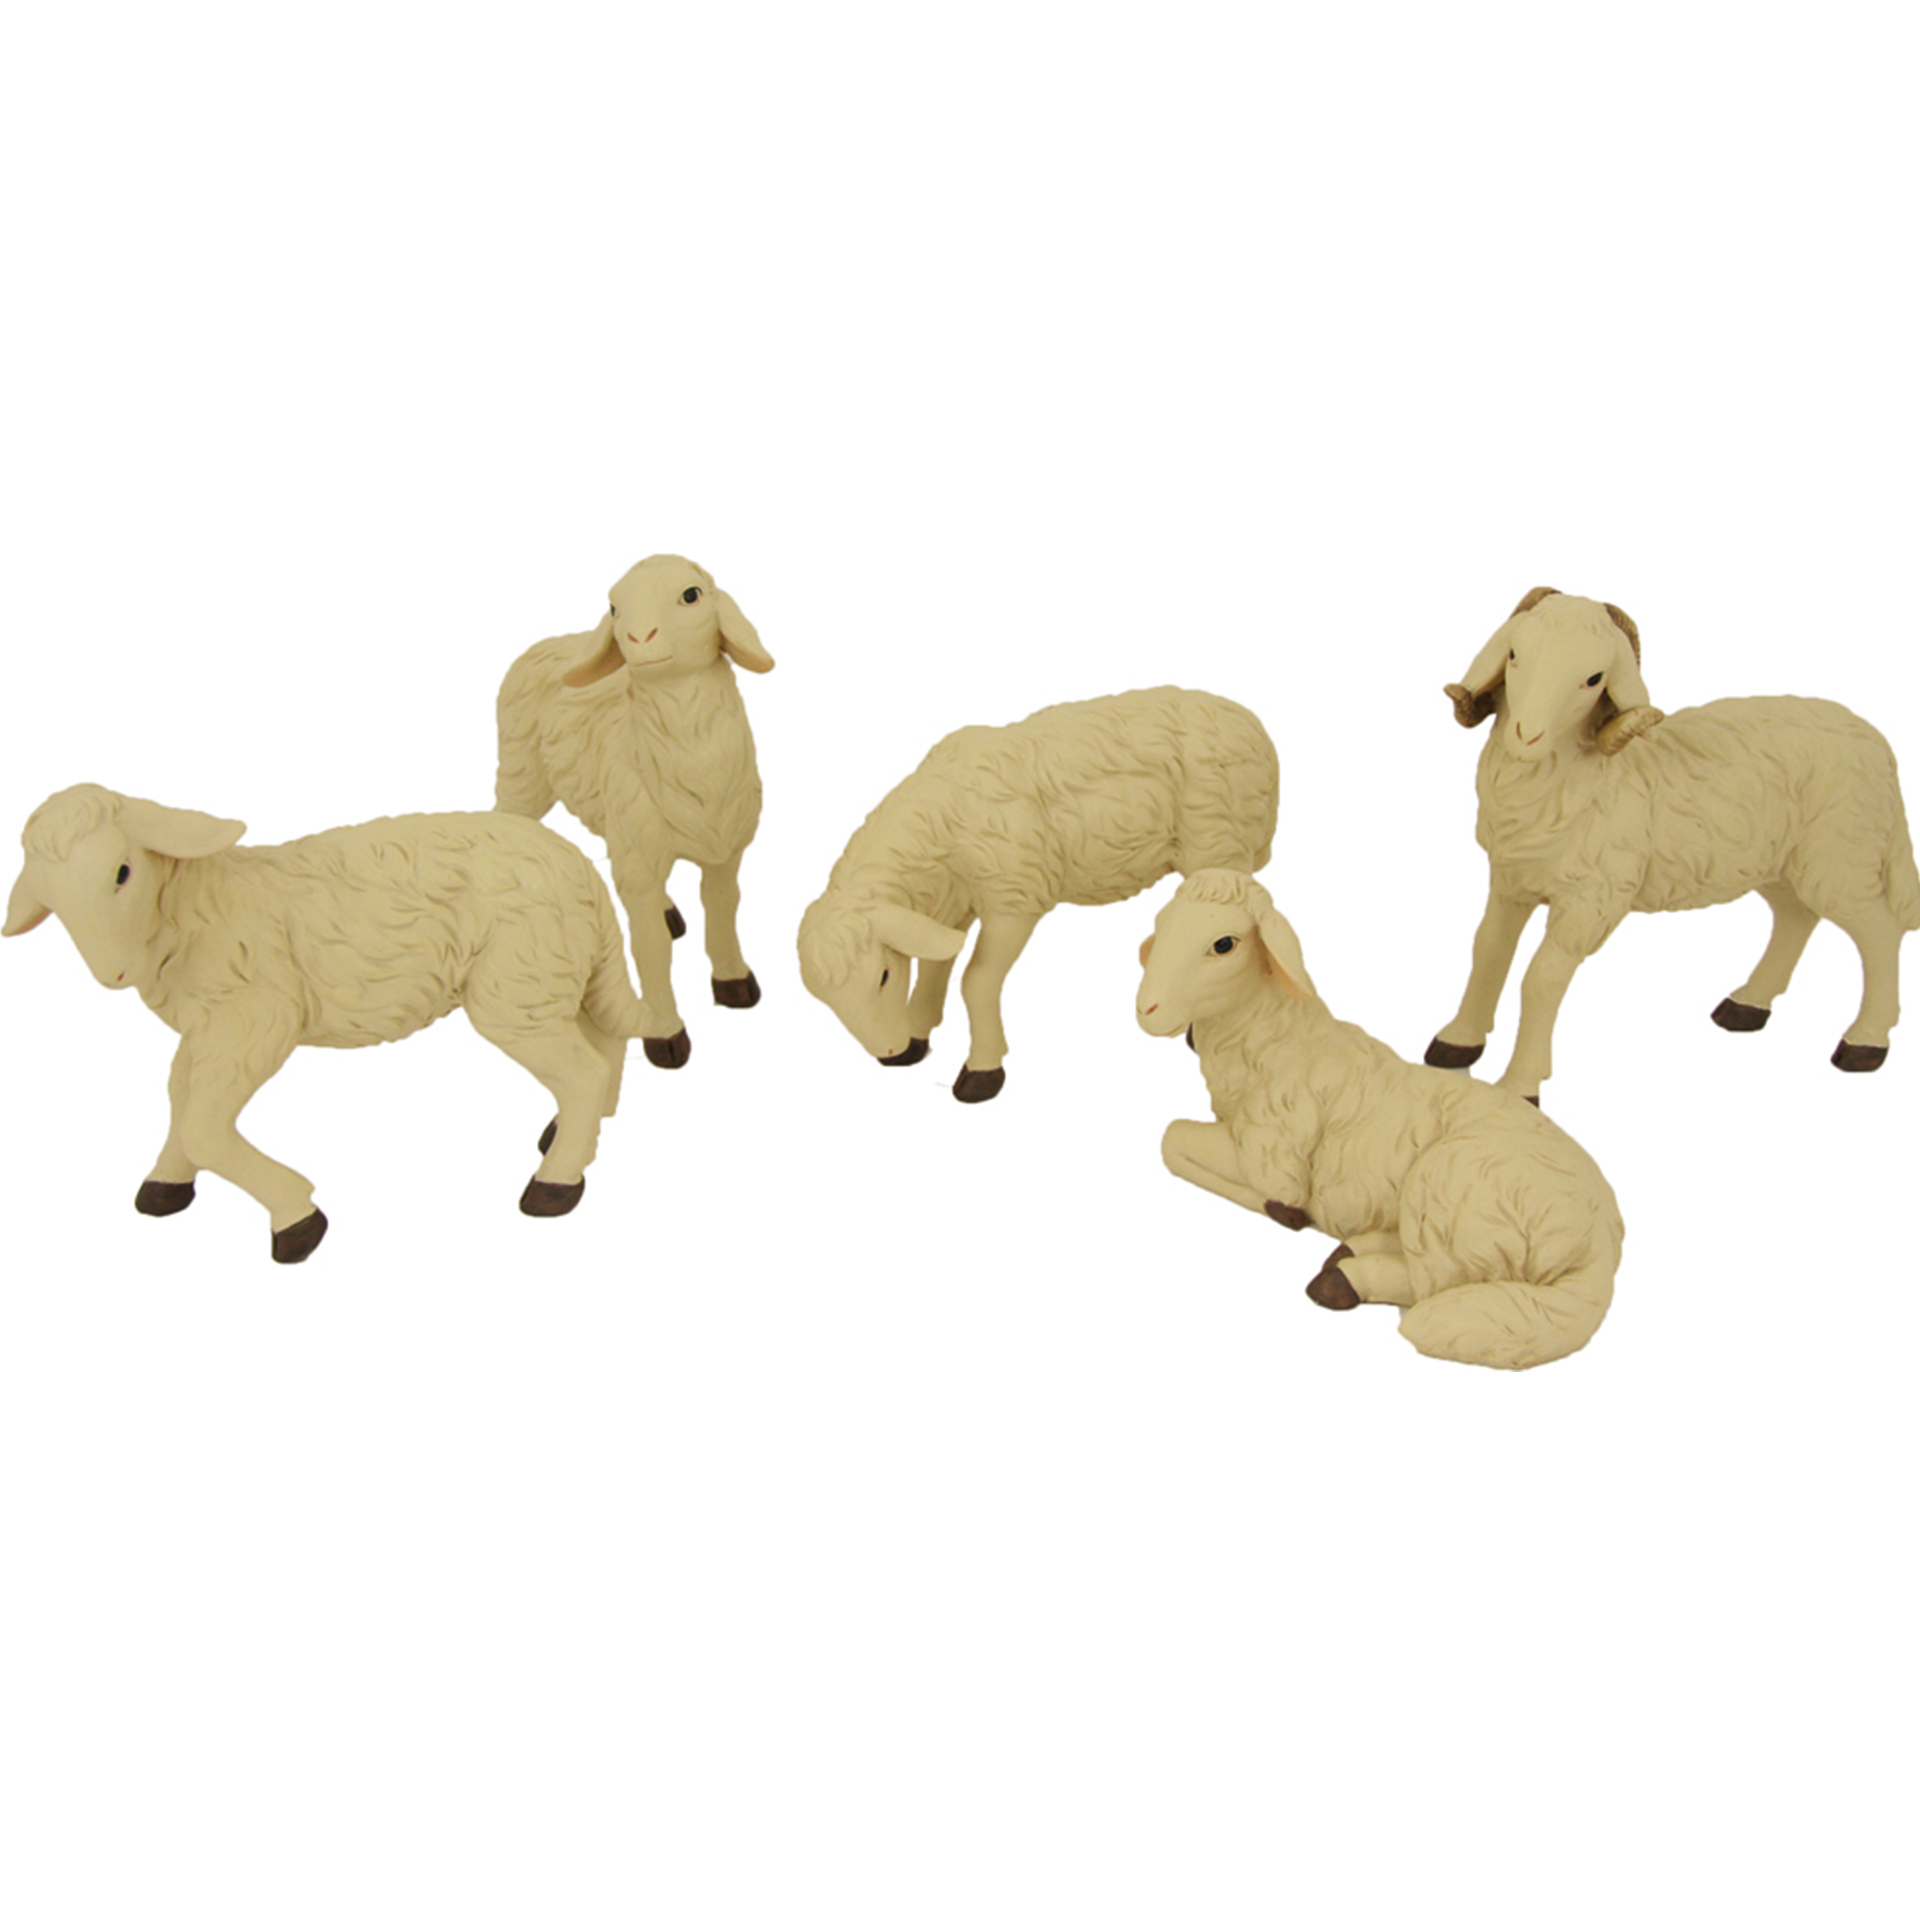 Schafe 5-tlg. Krippenfiguren Tierfiguren